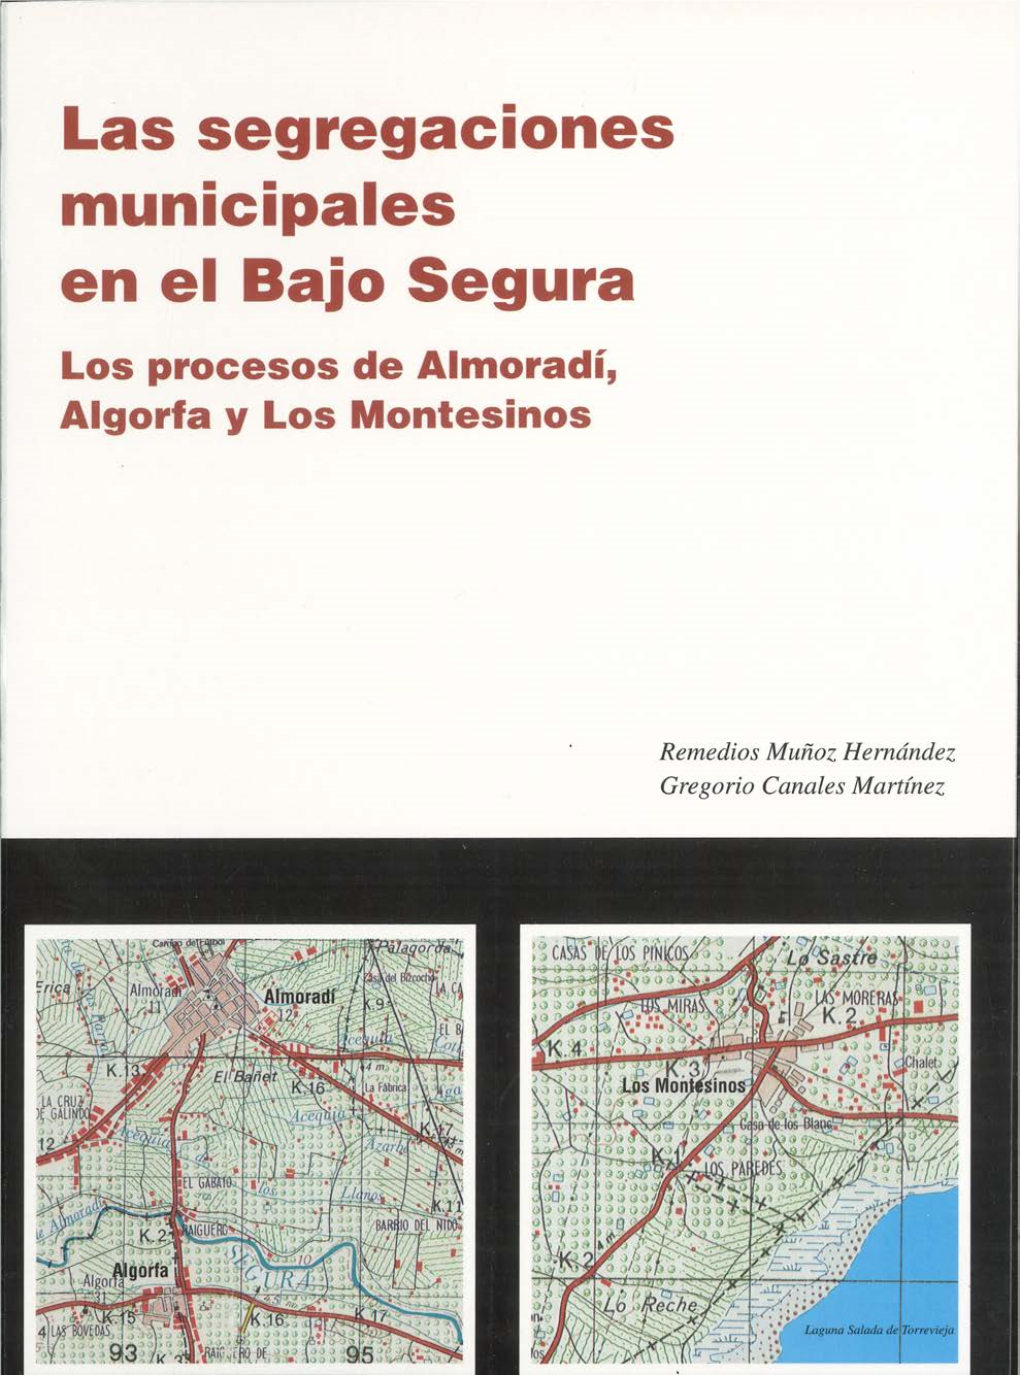 Las Segregaciones Municipales En El Baio Segura Los Procesos De Almoradí, Algorla Y Los Montesinos